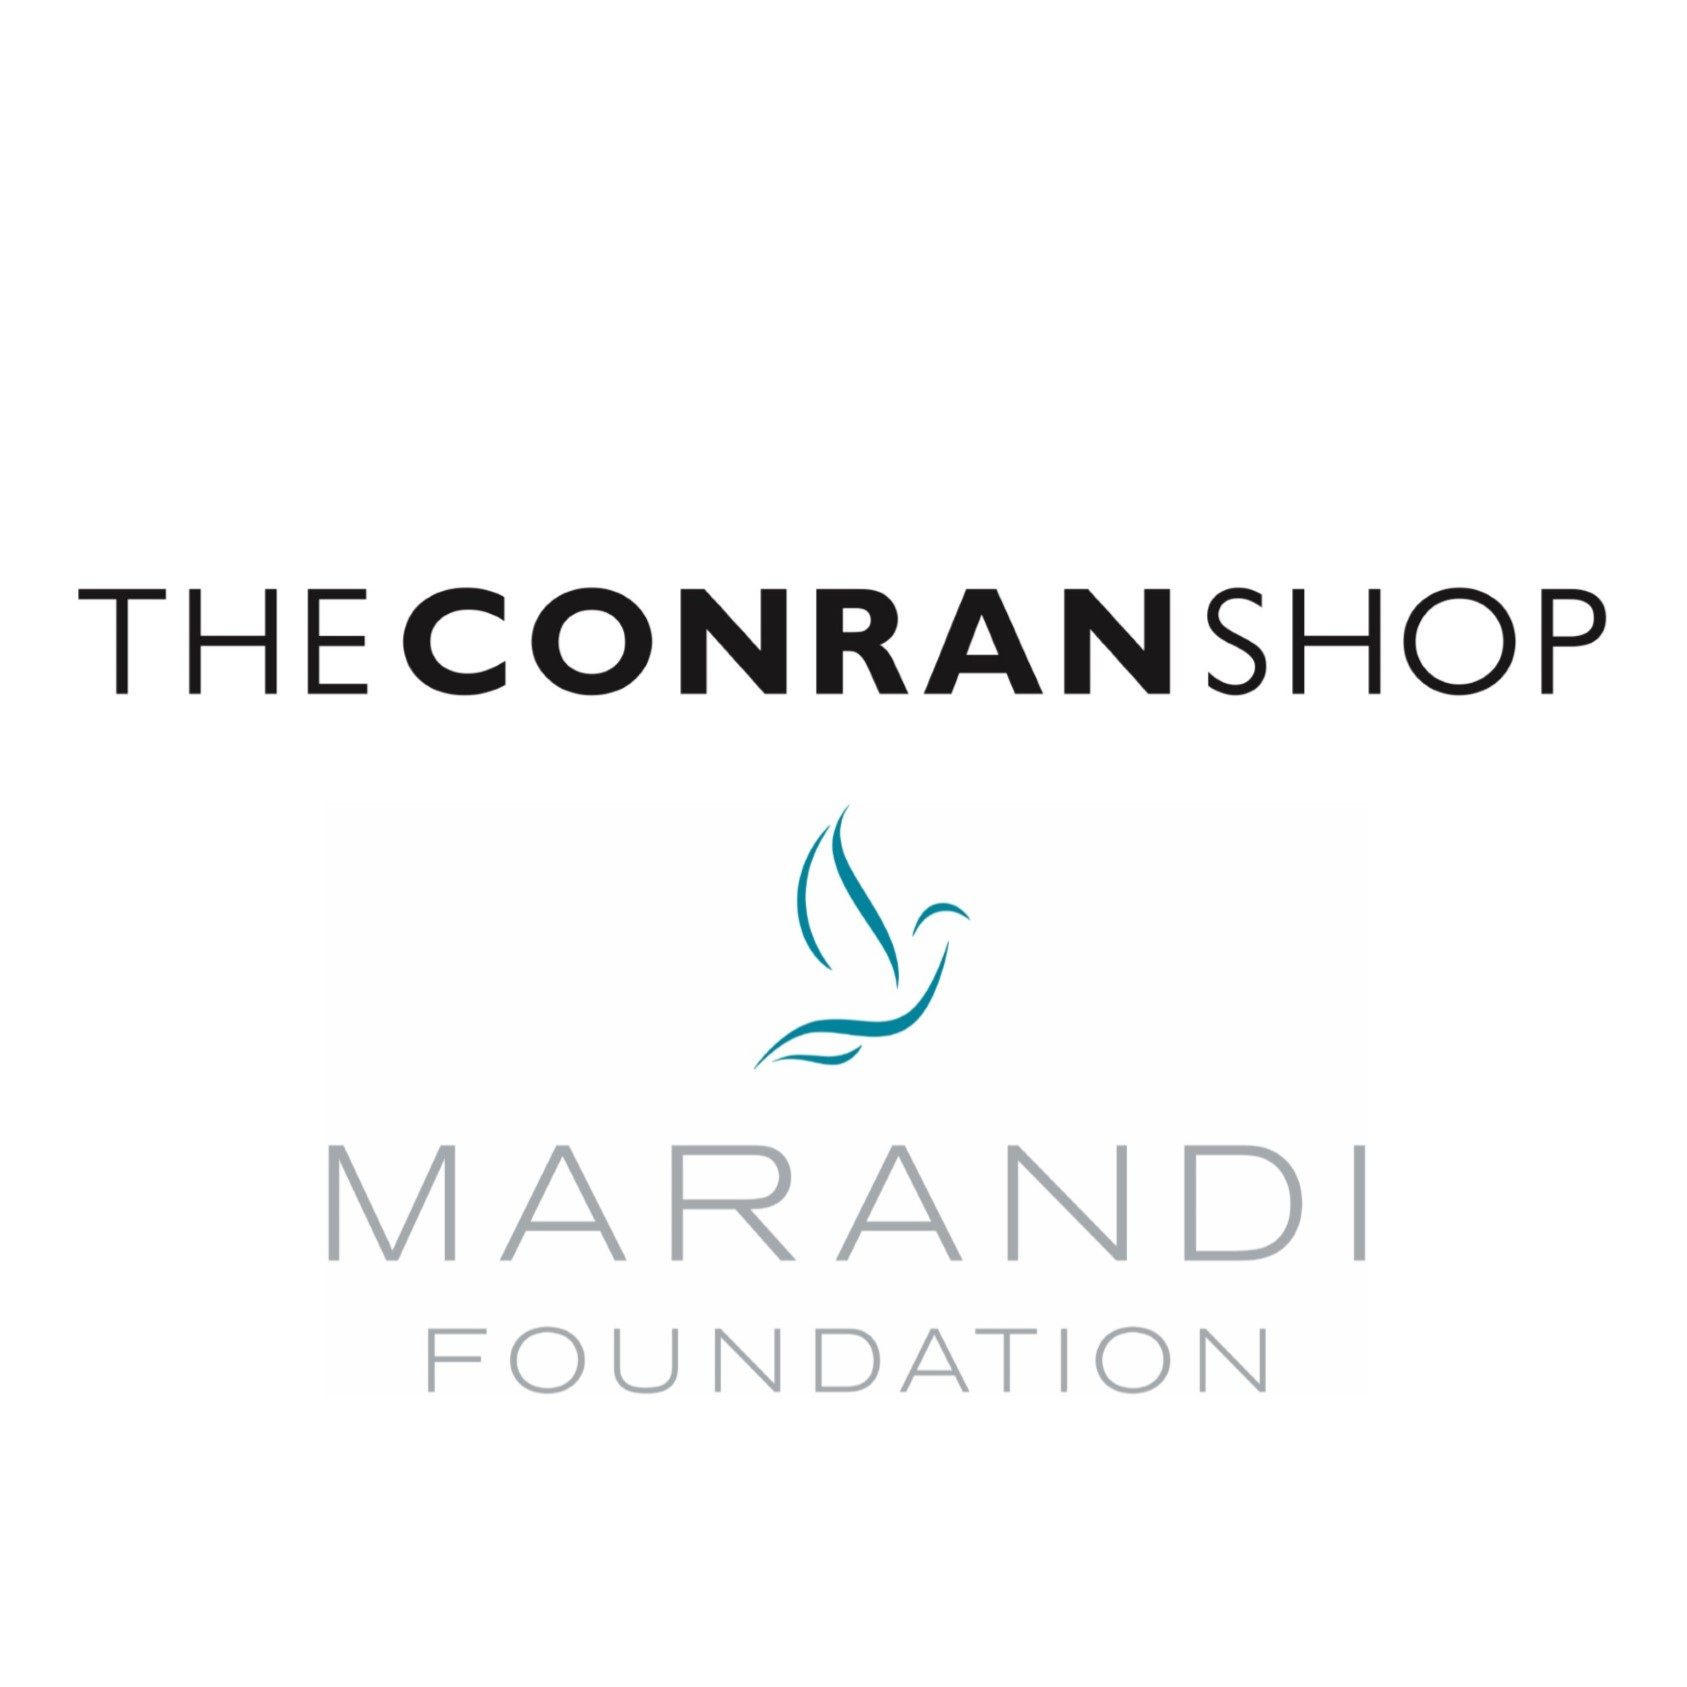 The Conran Shop & The Marandi Foundation